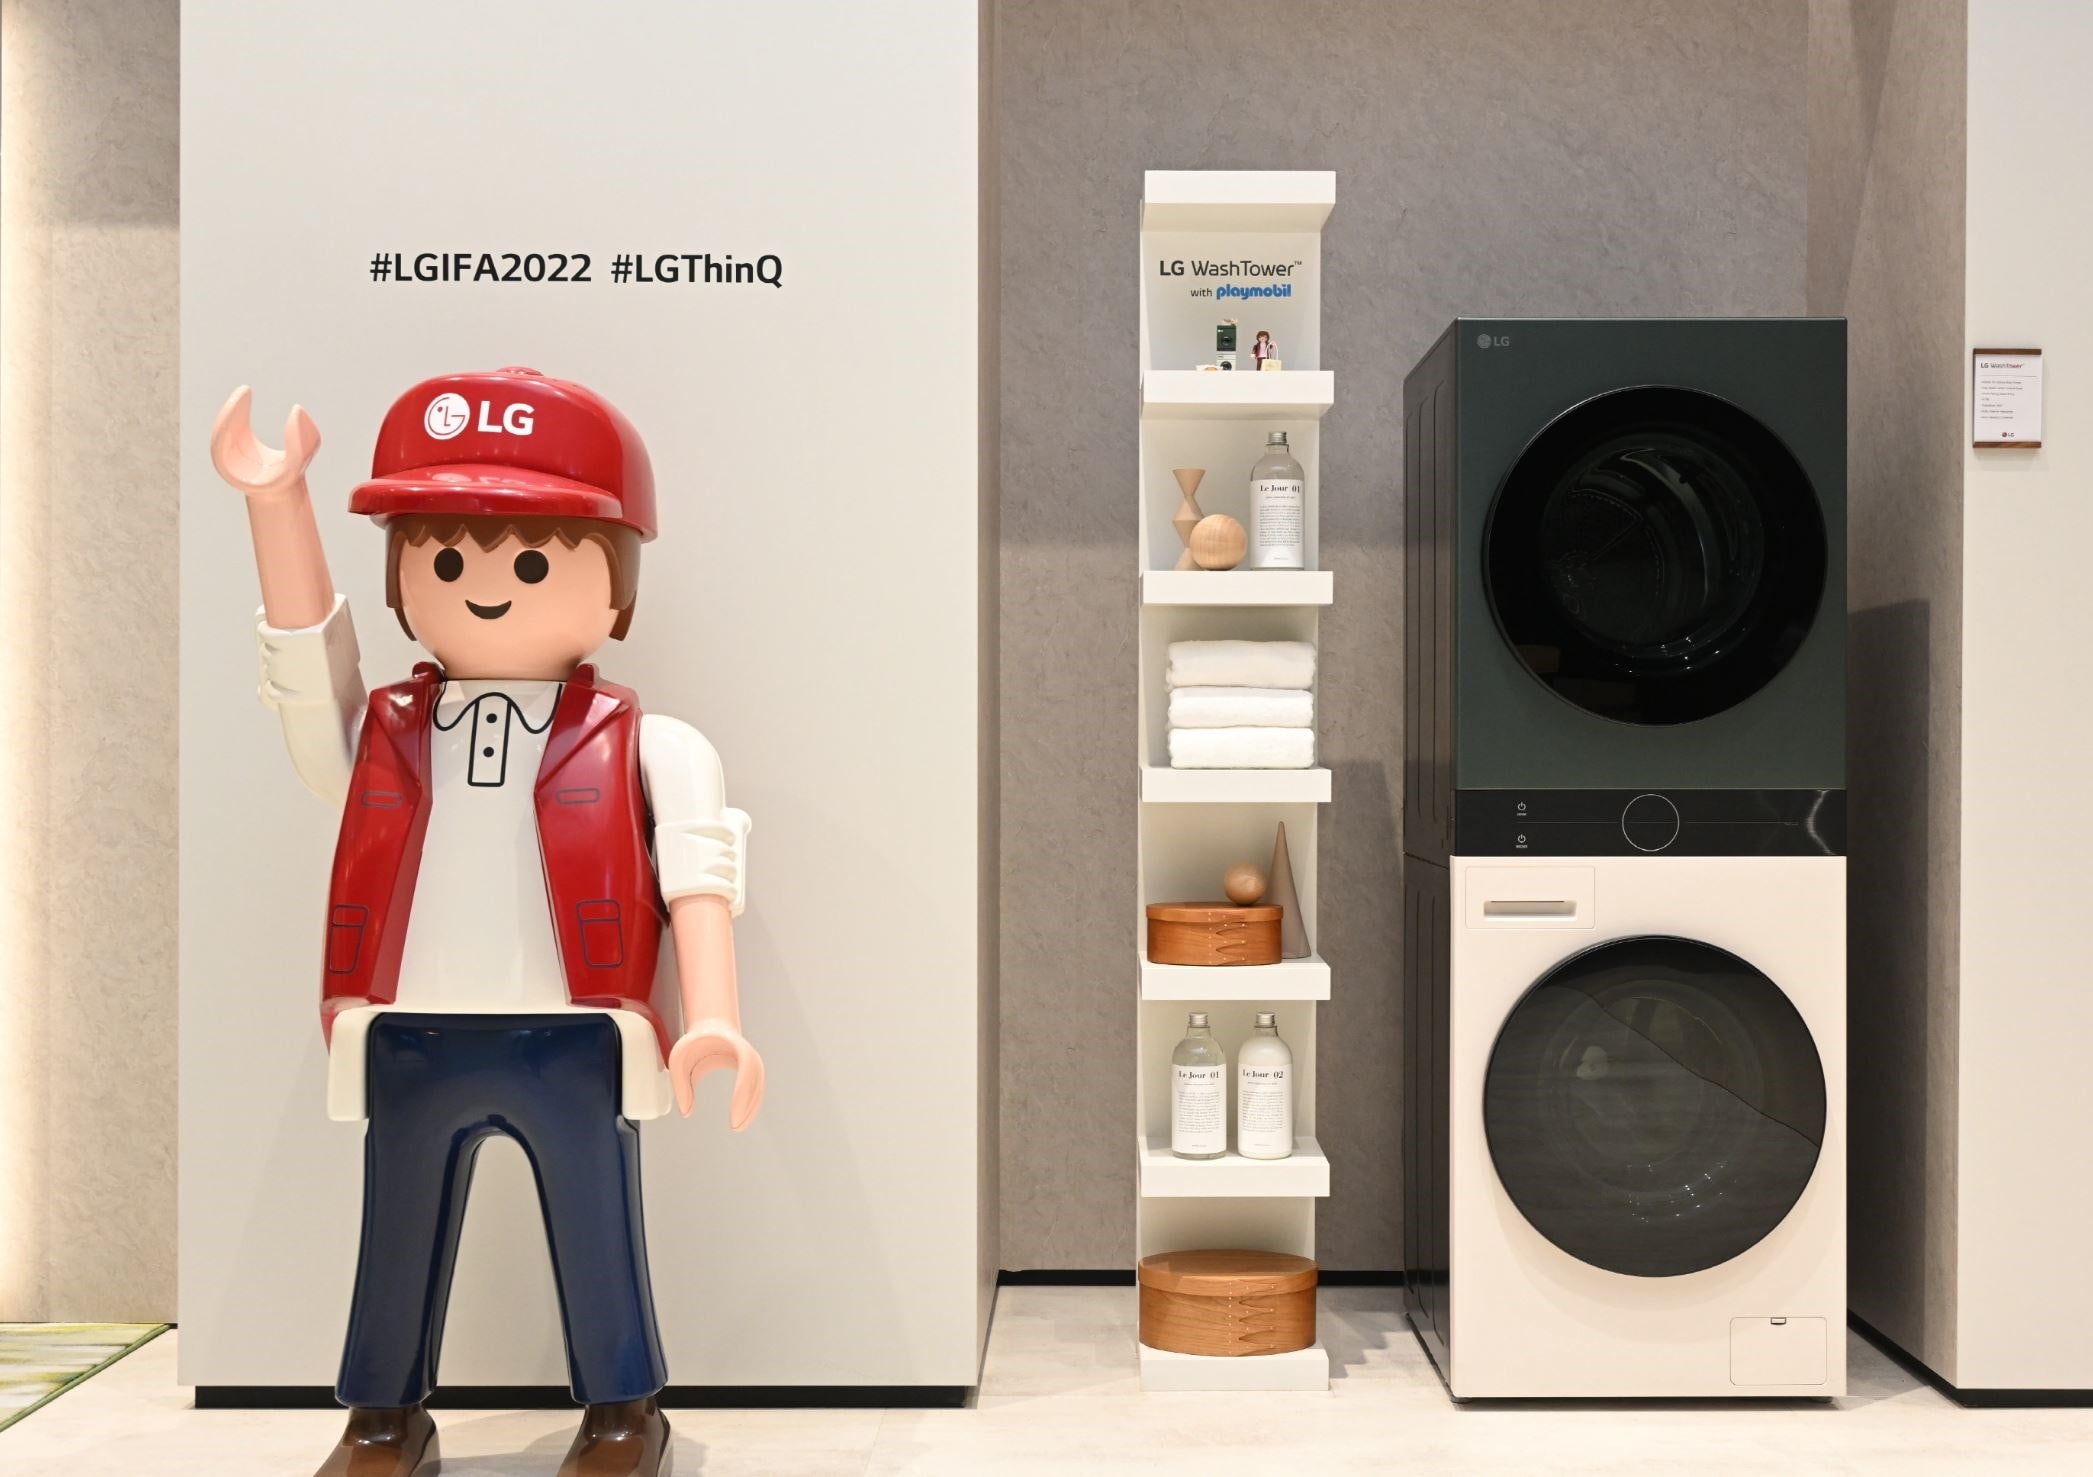 LG produits en miniature Playmobil à l'IFA 2022 à Berlin.